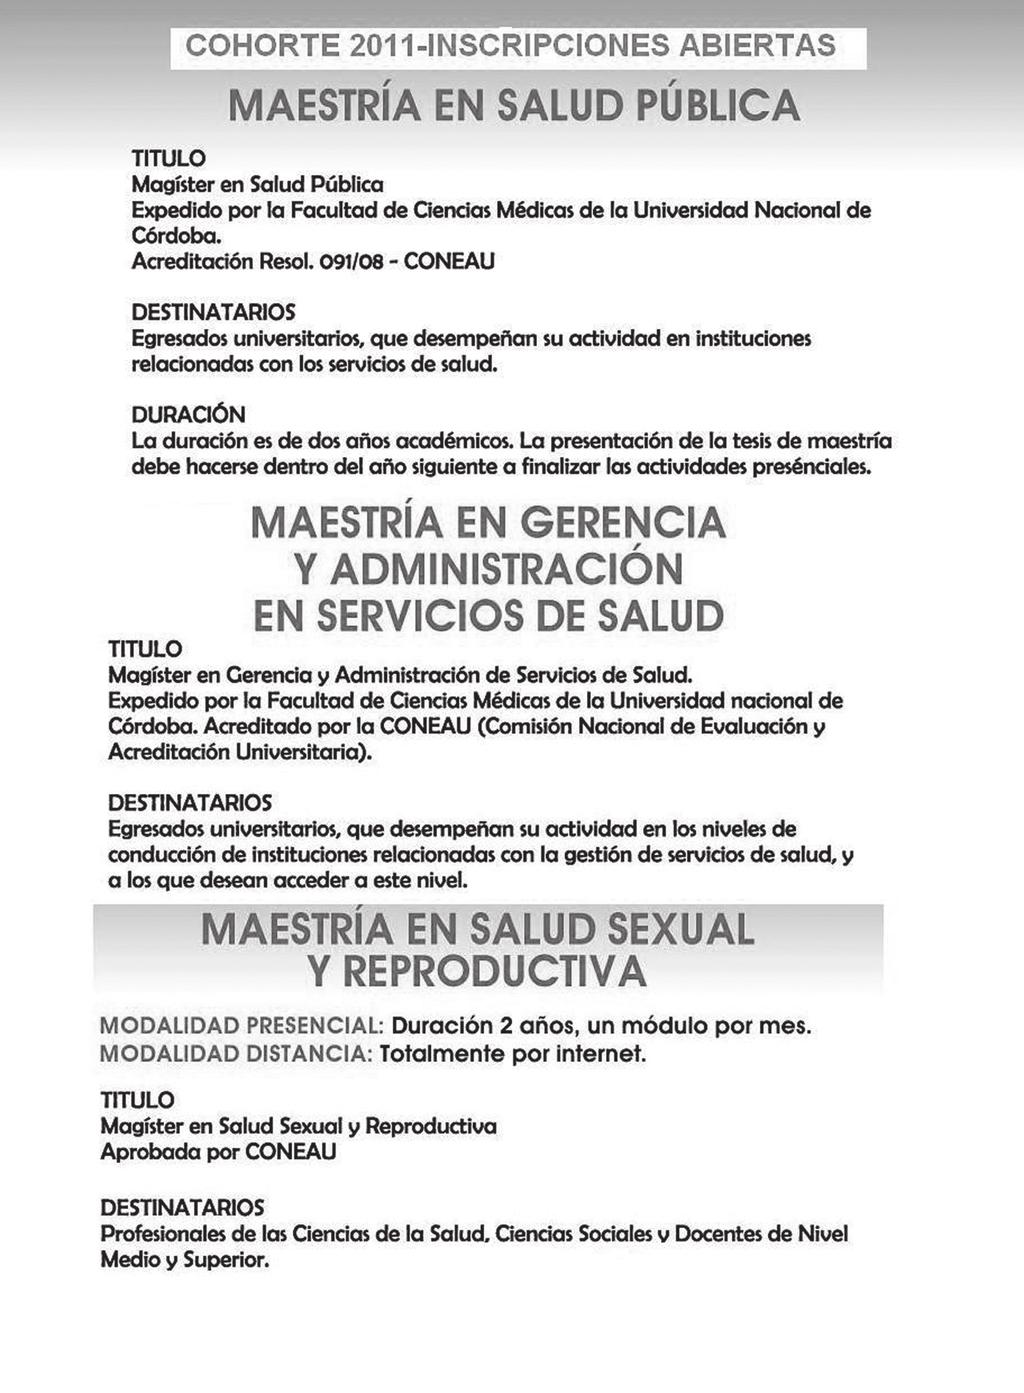 84 Revista de Salud Pública, (XIV) 2: 80-83, dic. 2010 dic. 2010 MANUSCRIPT SUBMISSION GUIDELINES INFORMES E INSCRIPCIONES Escuela de Salud Pública.